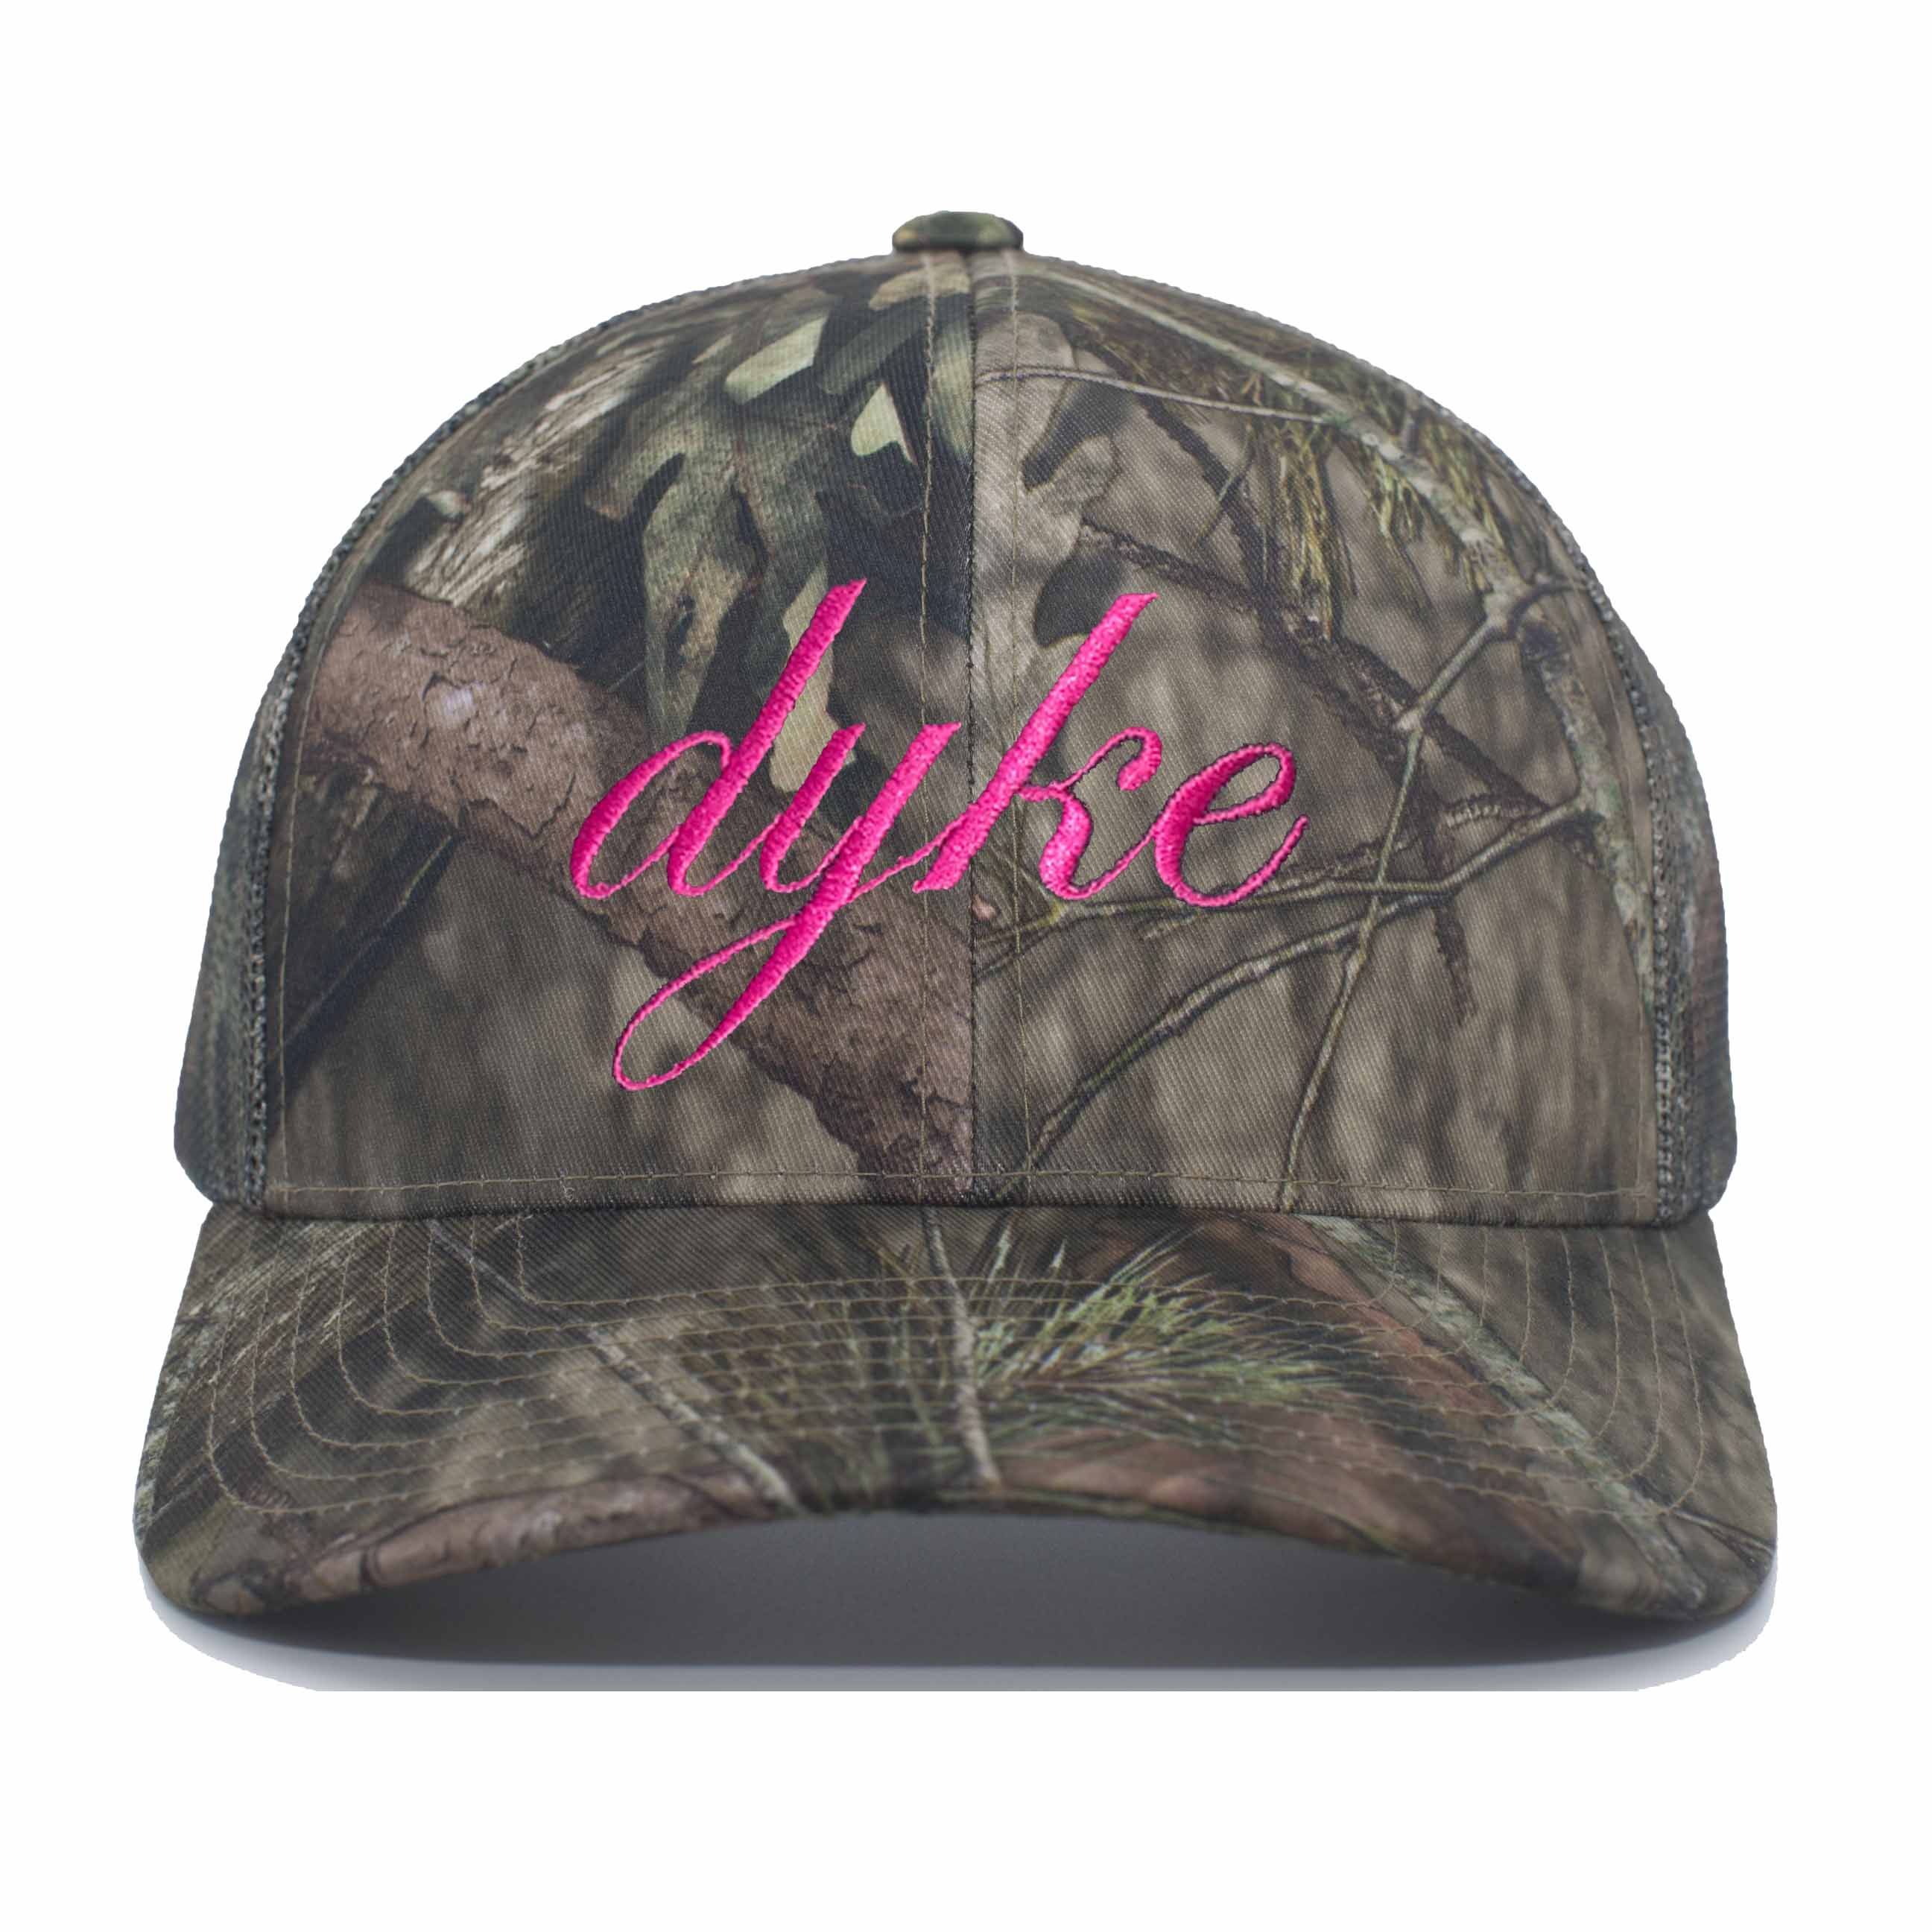 dyke breakup country mossy oak snapback hat